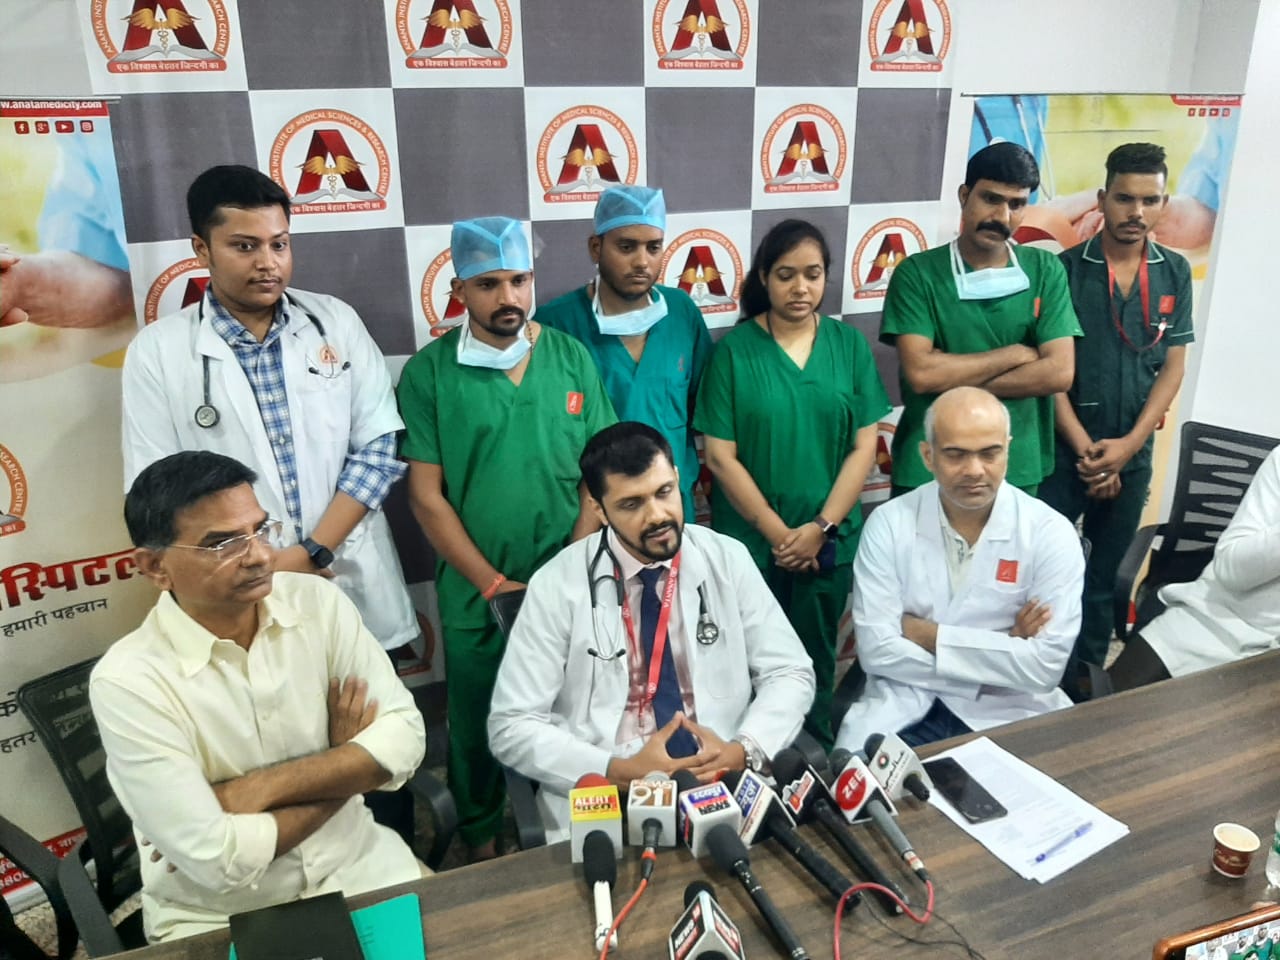 दक्षिणी राजस्थान का पहला सफल बोन मैरो ट्रांसप्लांट अनन्ता हॉस्पिटल में हुआ